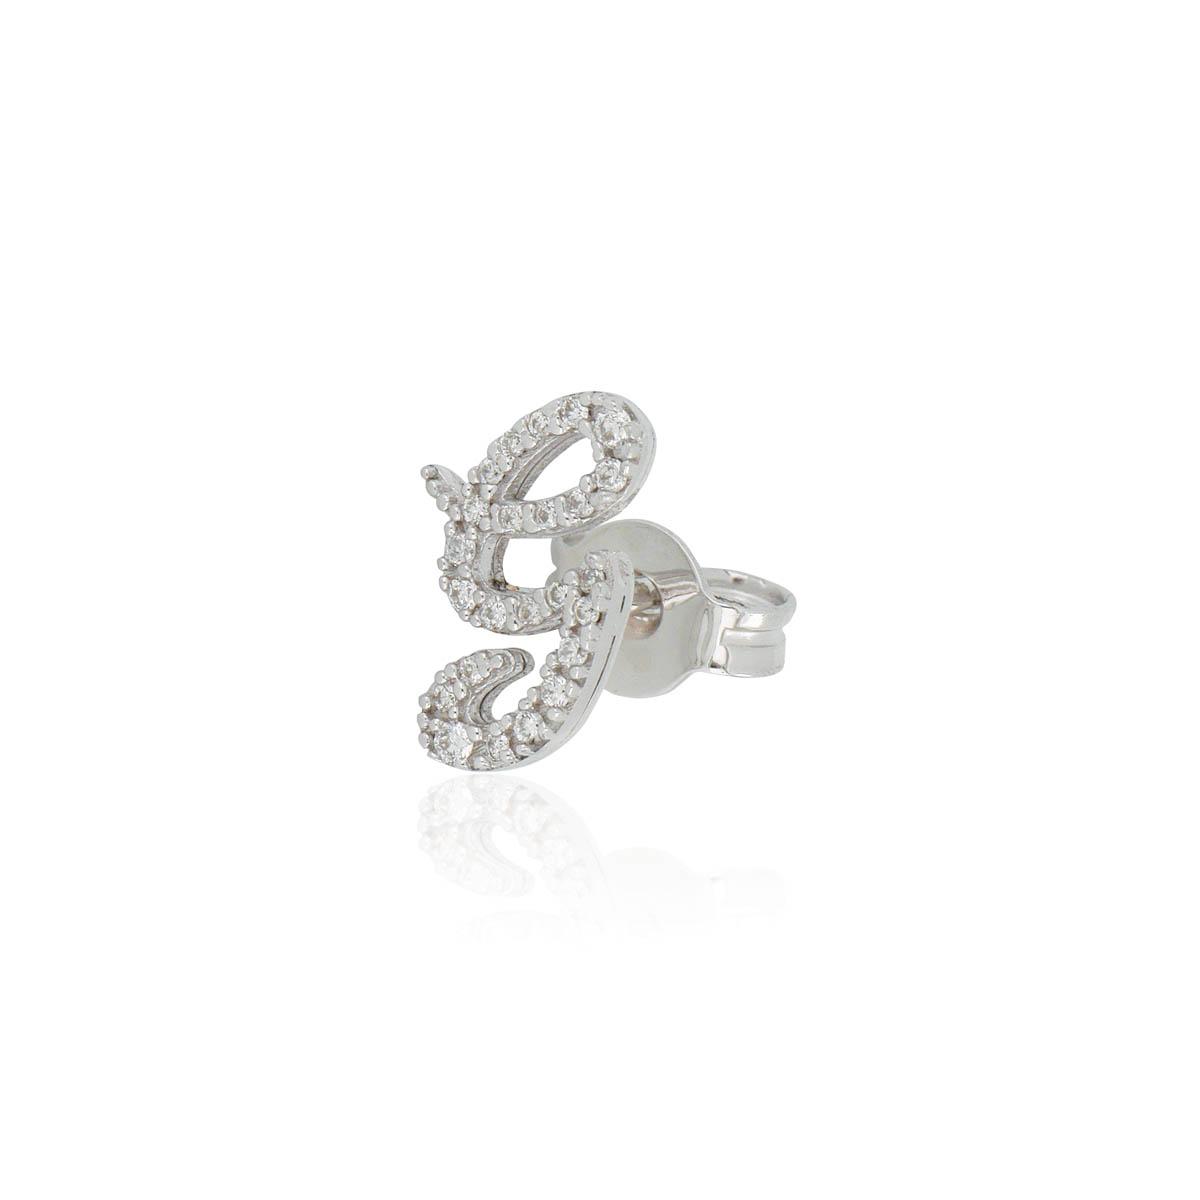 Mono orecchino in oro bianco 18kt, con iniziale o numero personalizzabile in diamanti -  - OD452